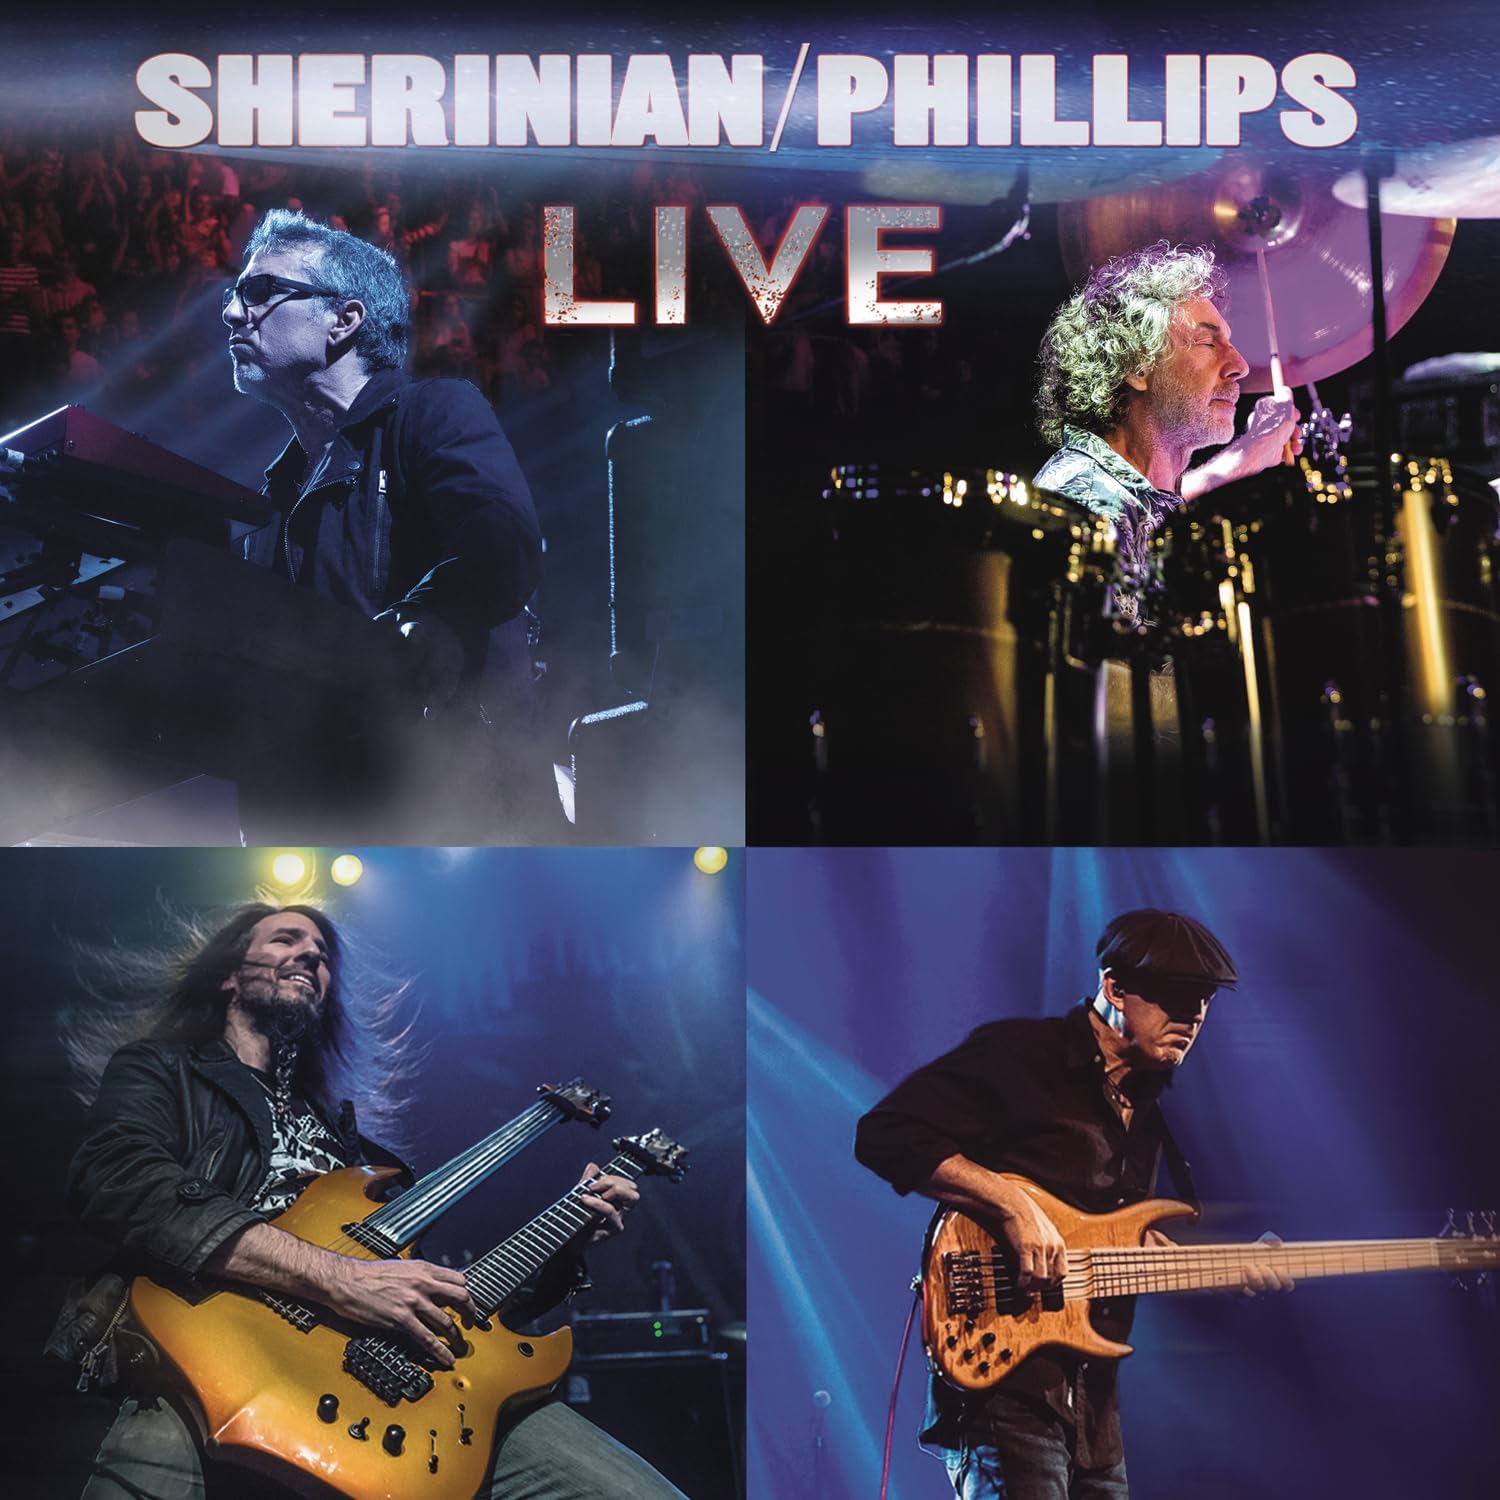 Sherinian/Phillips Live | Derek Sherinian, Simon Phillips